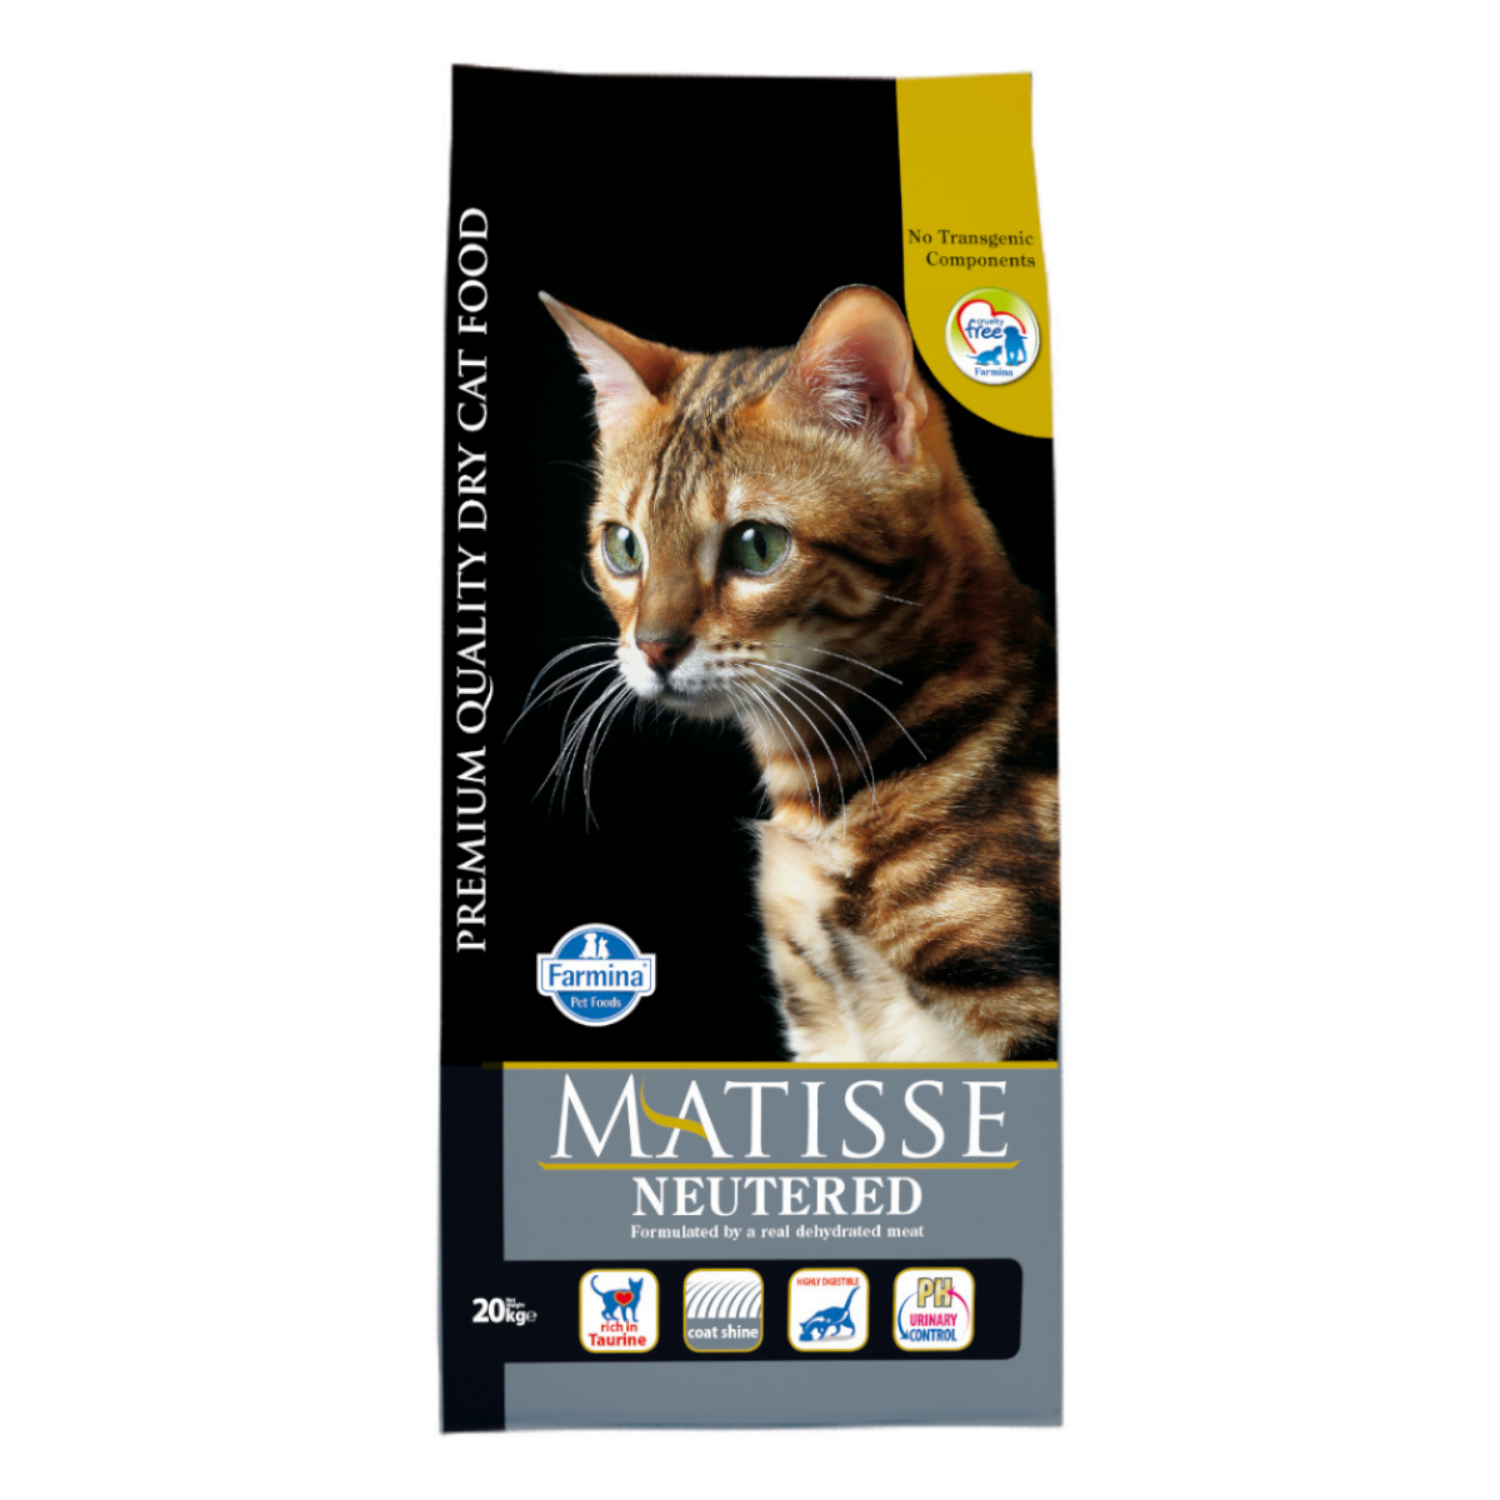 Matisse Neutered - 20kg